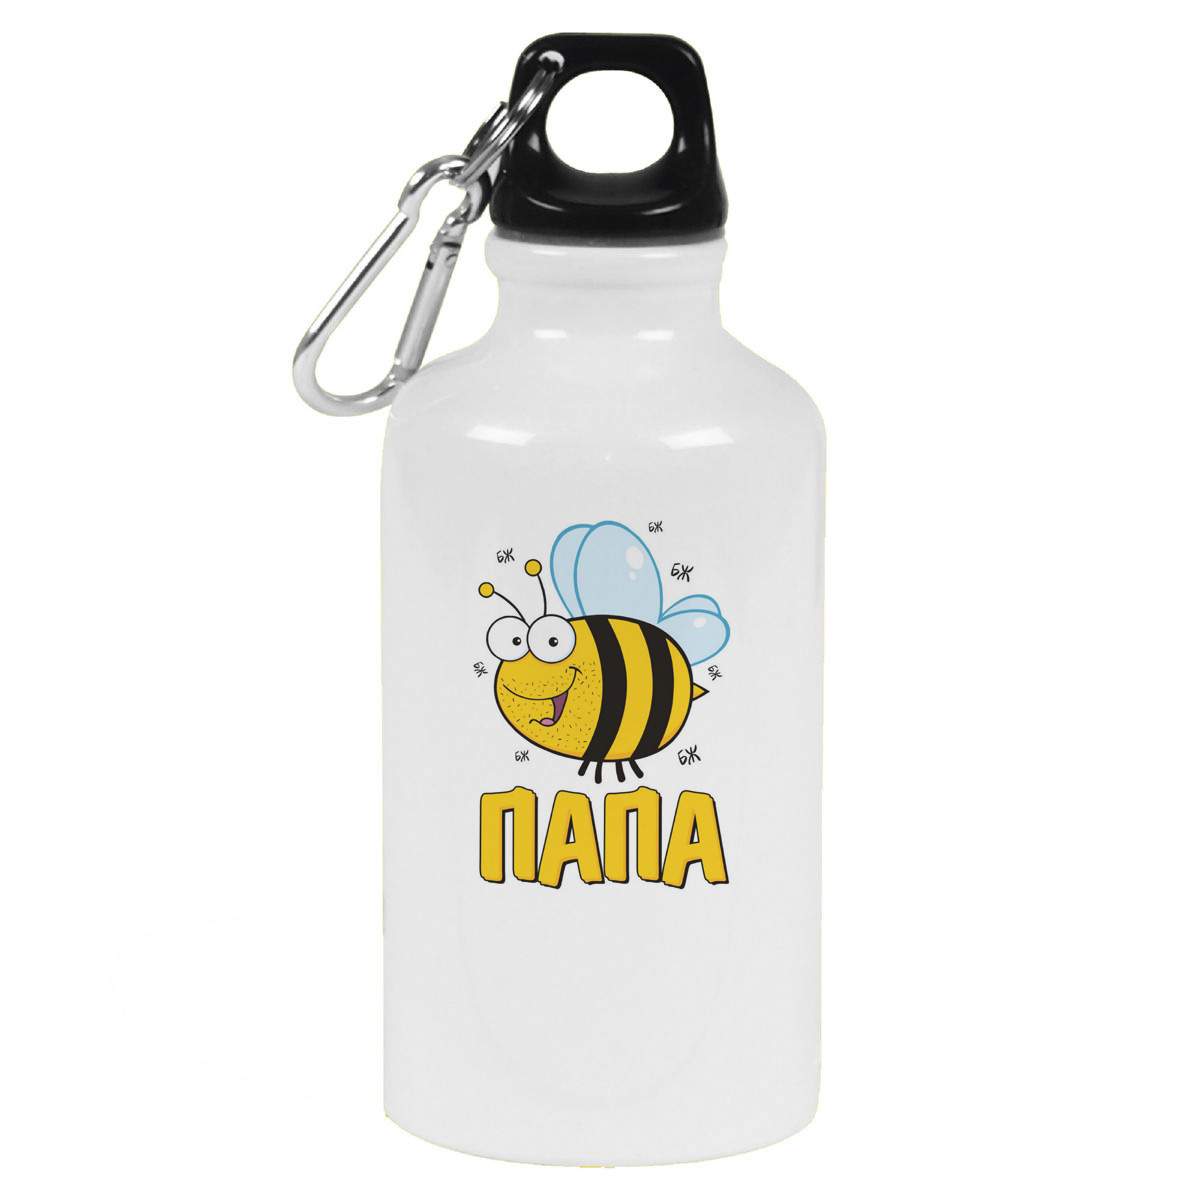 Пчелка из пластиковых бутылок. Как сделать из пластиковой бутылки пчелу?